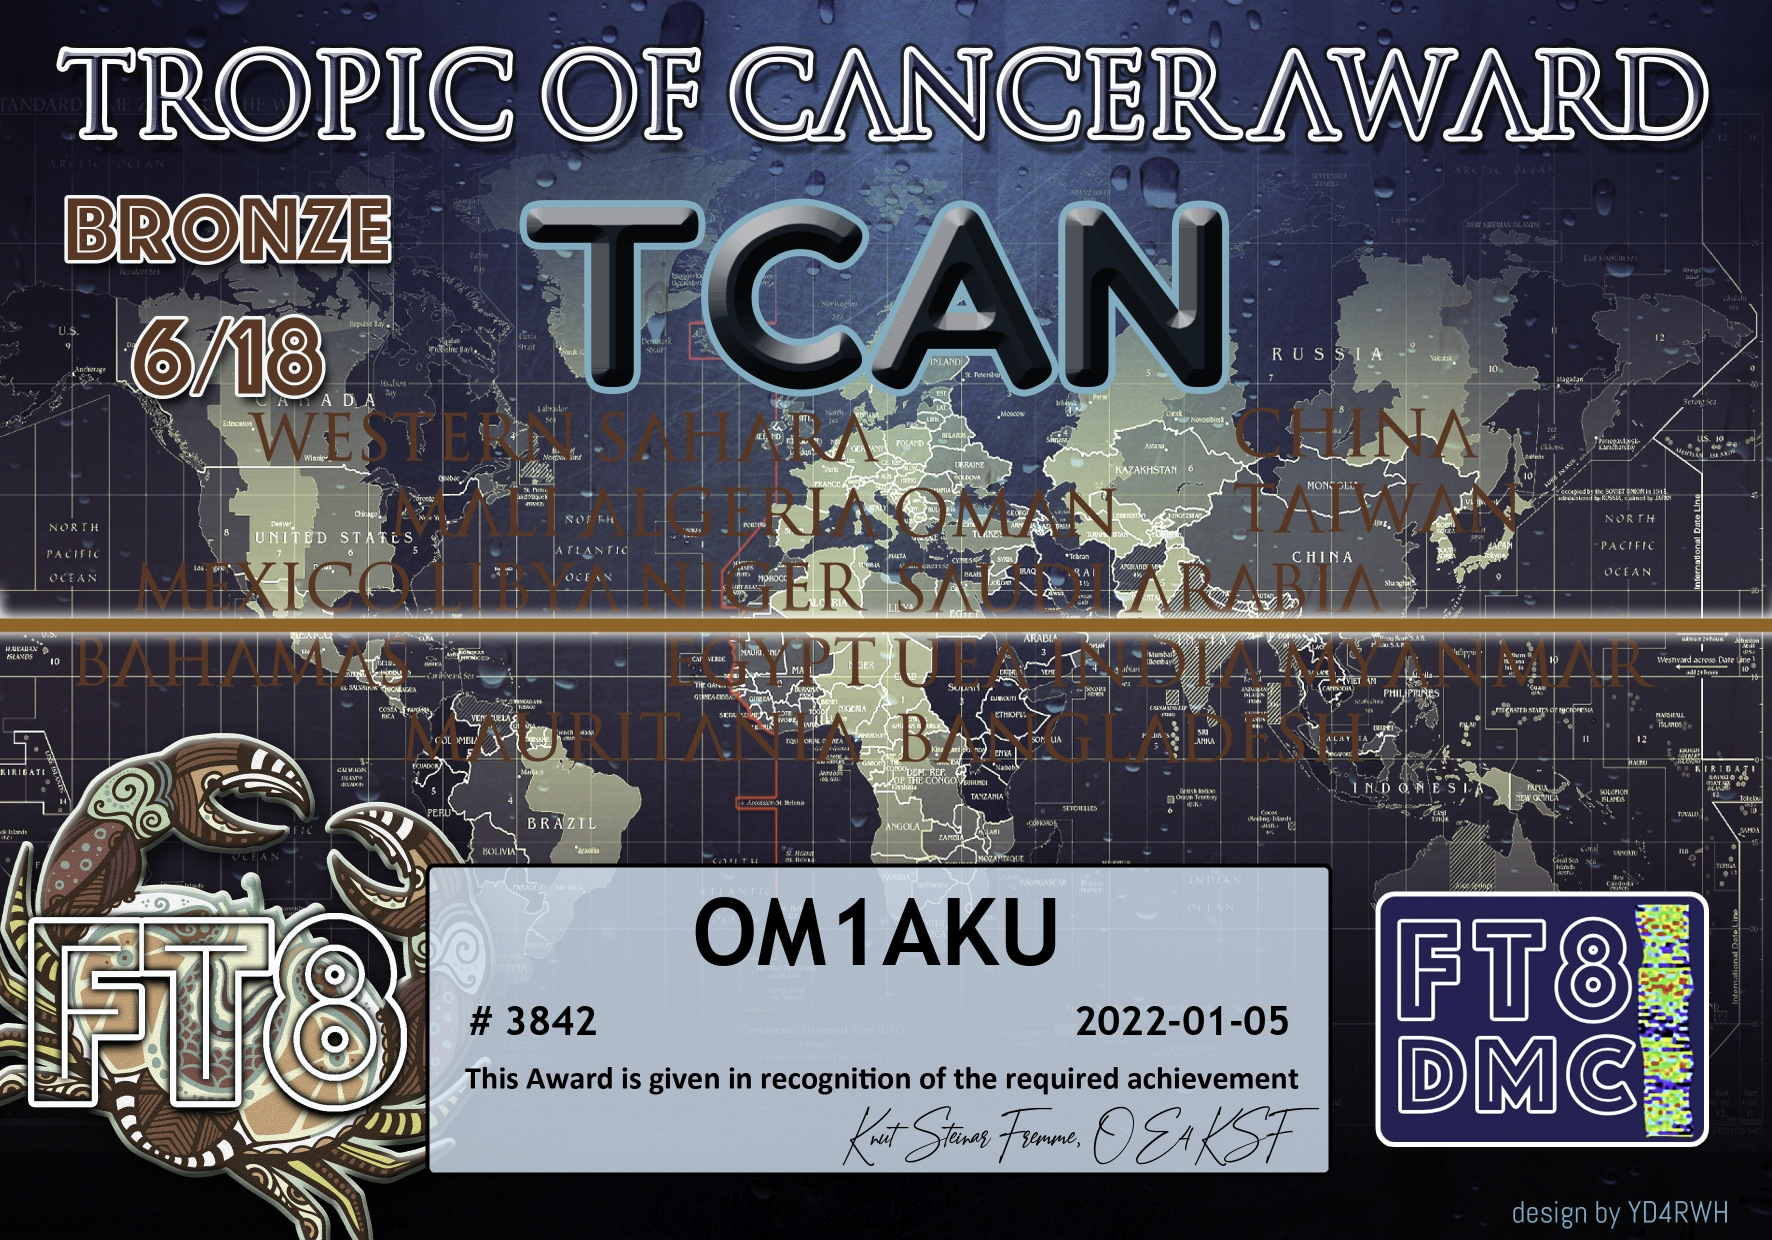 OM1AKU-TCAN-BRONZE_FT8DMC